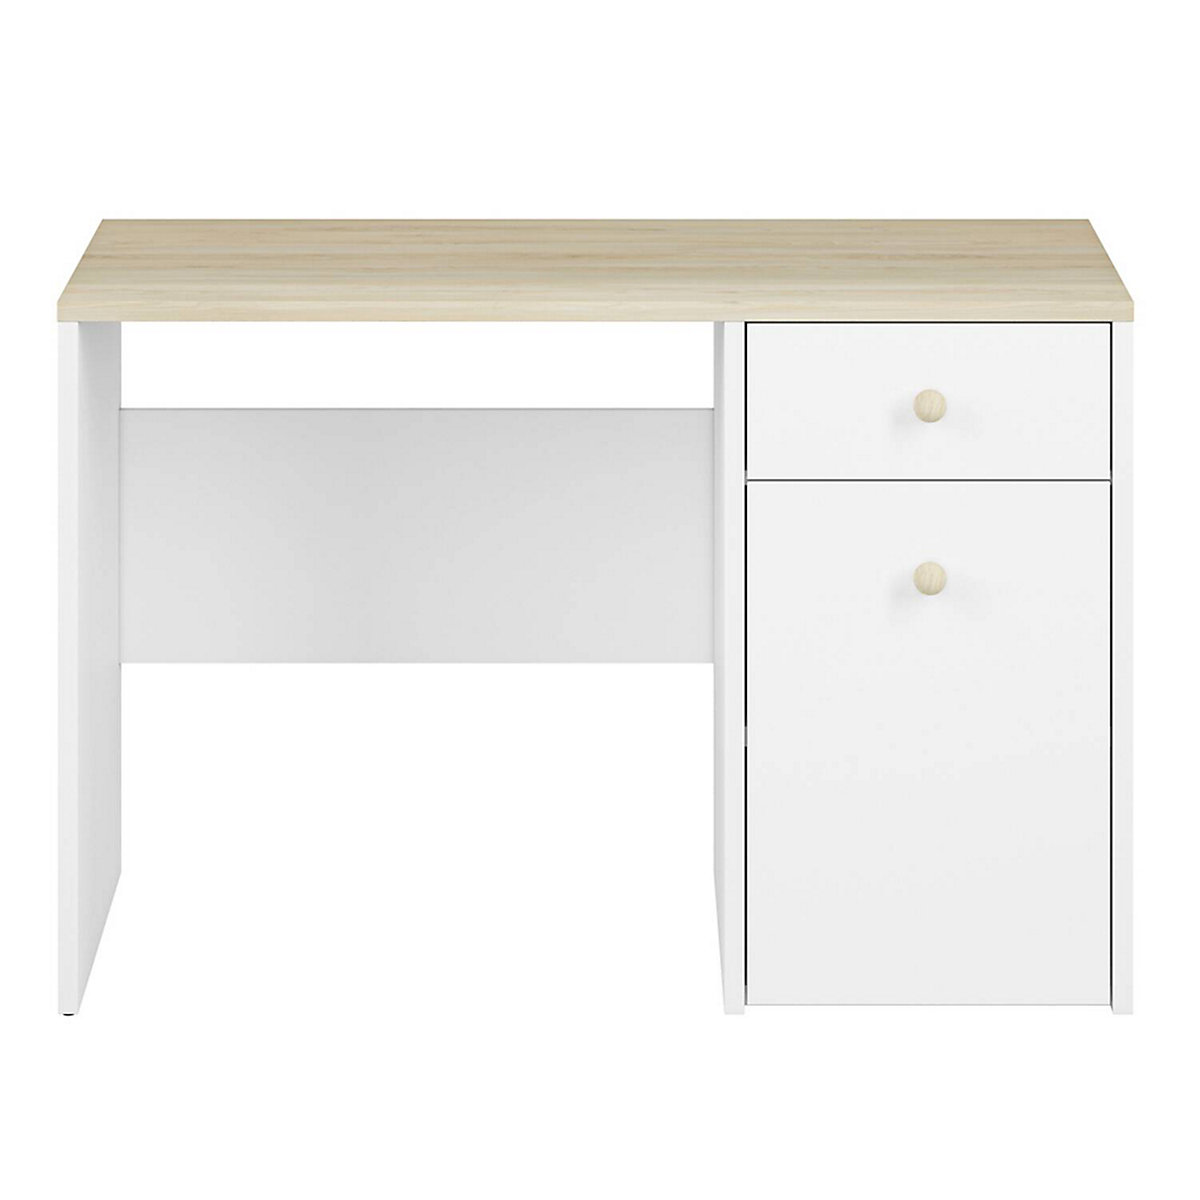 LOMADO® Schreibtisch mit Aufbewahrung ELVA-131 in weiß mit Fjord Buche Nb. B/H/T: ca. 117/79/51 cm